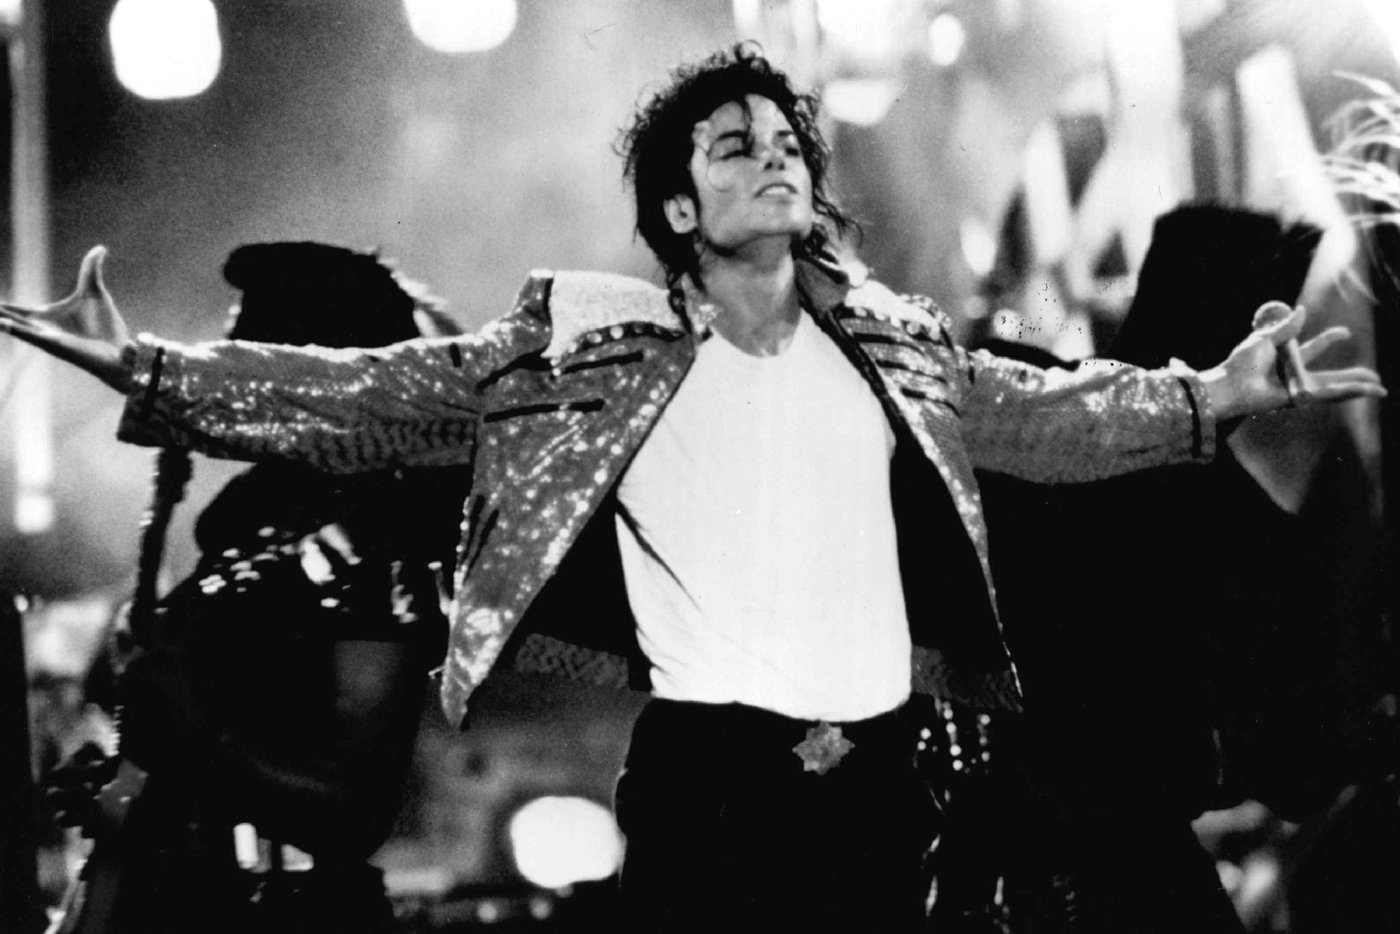 Cuatros años después Michael Jackson sigue presente